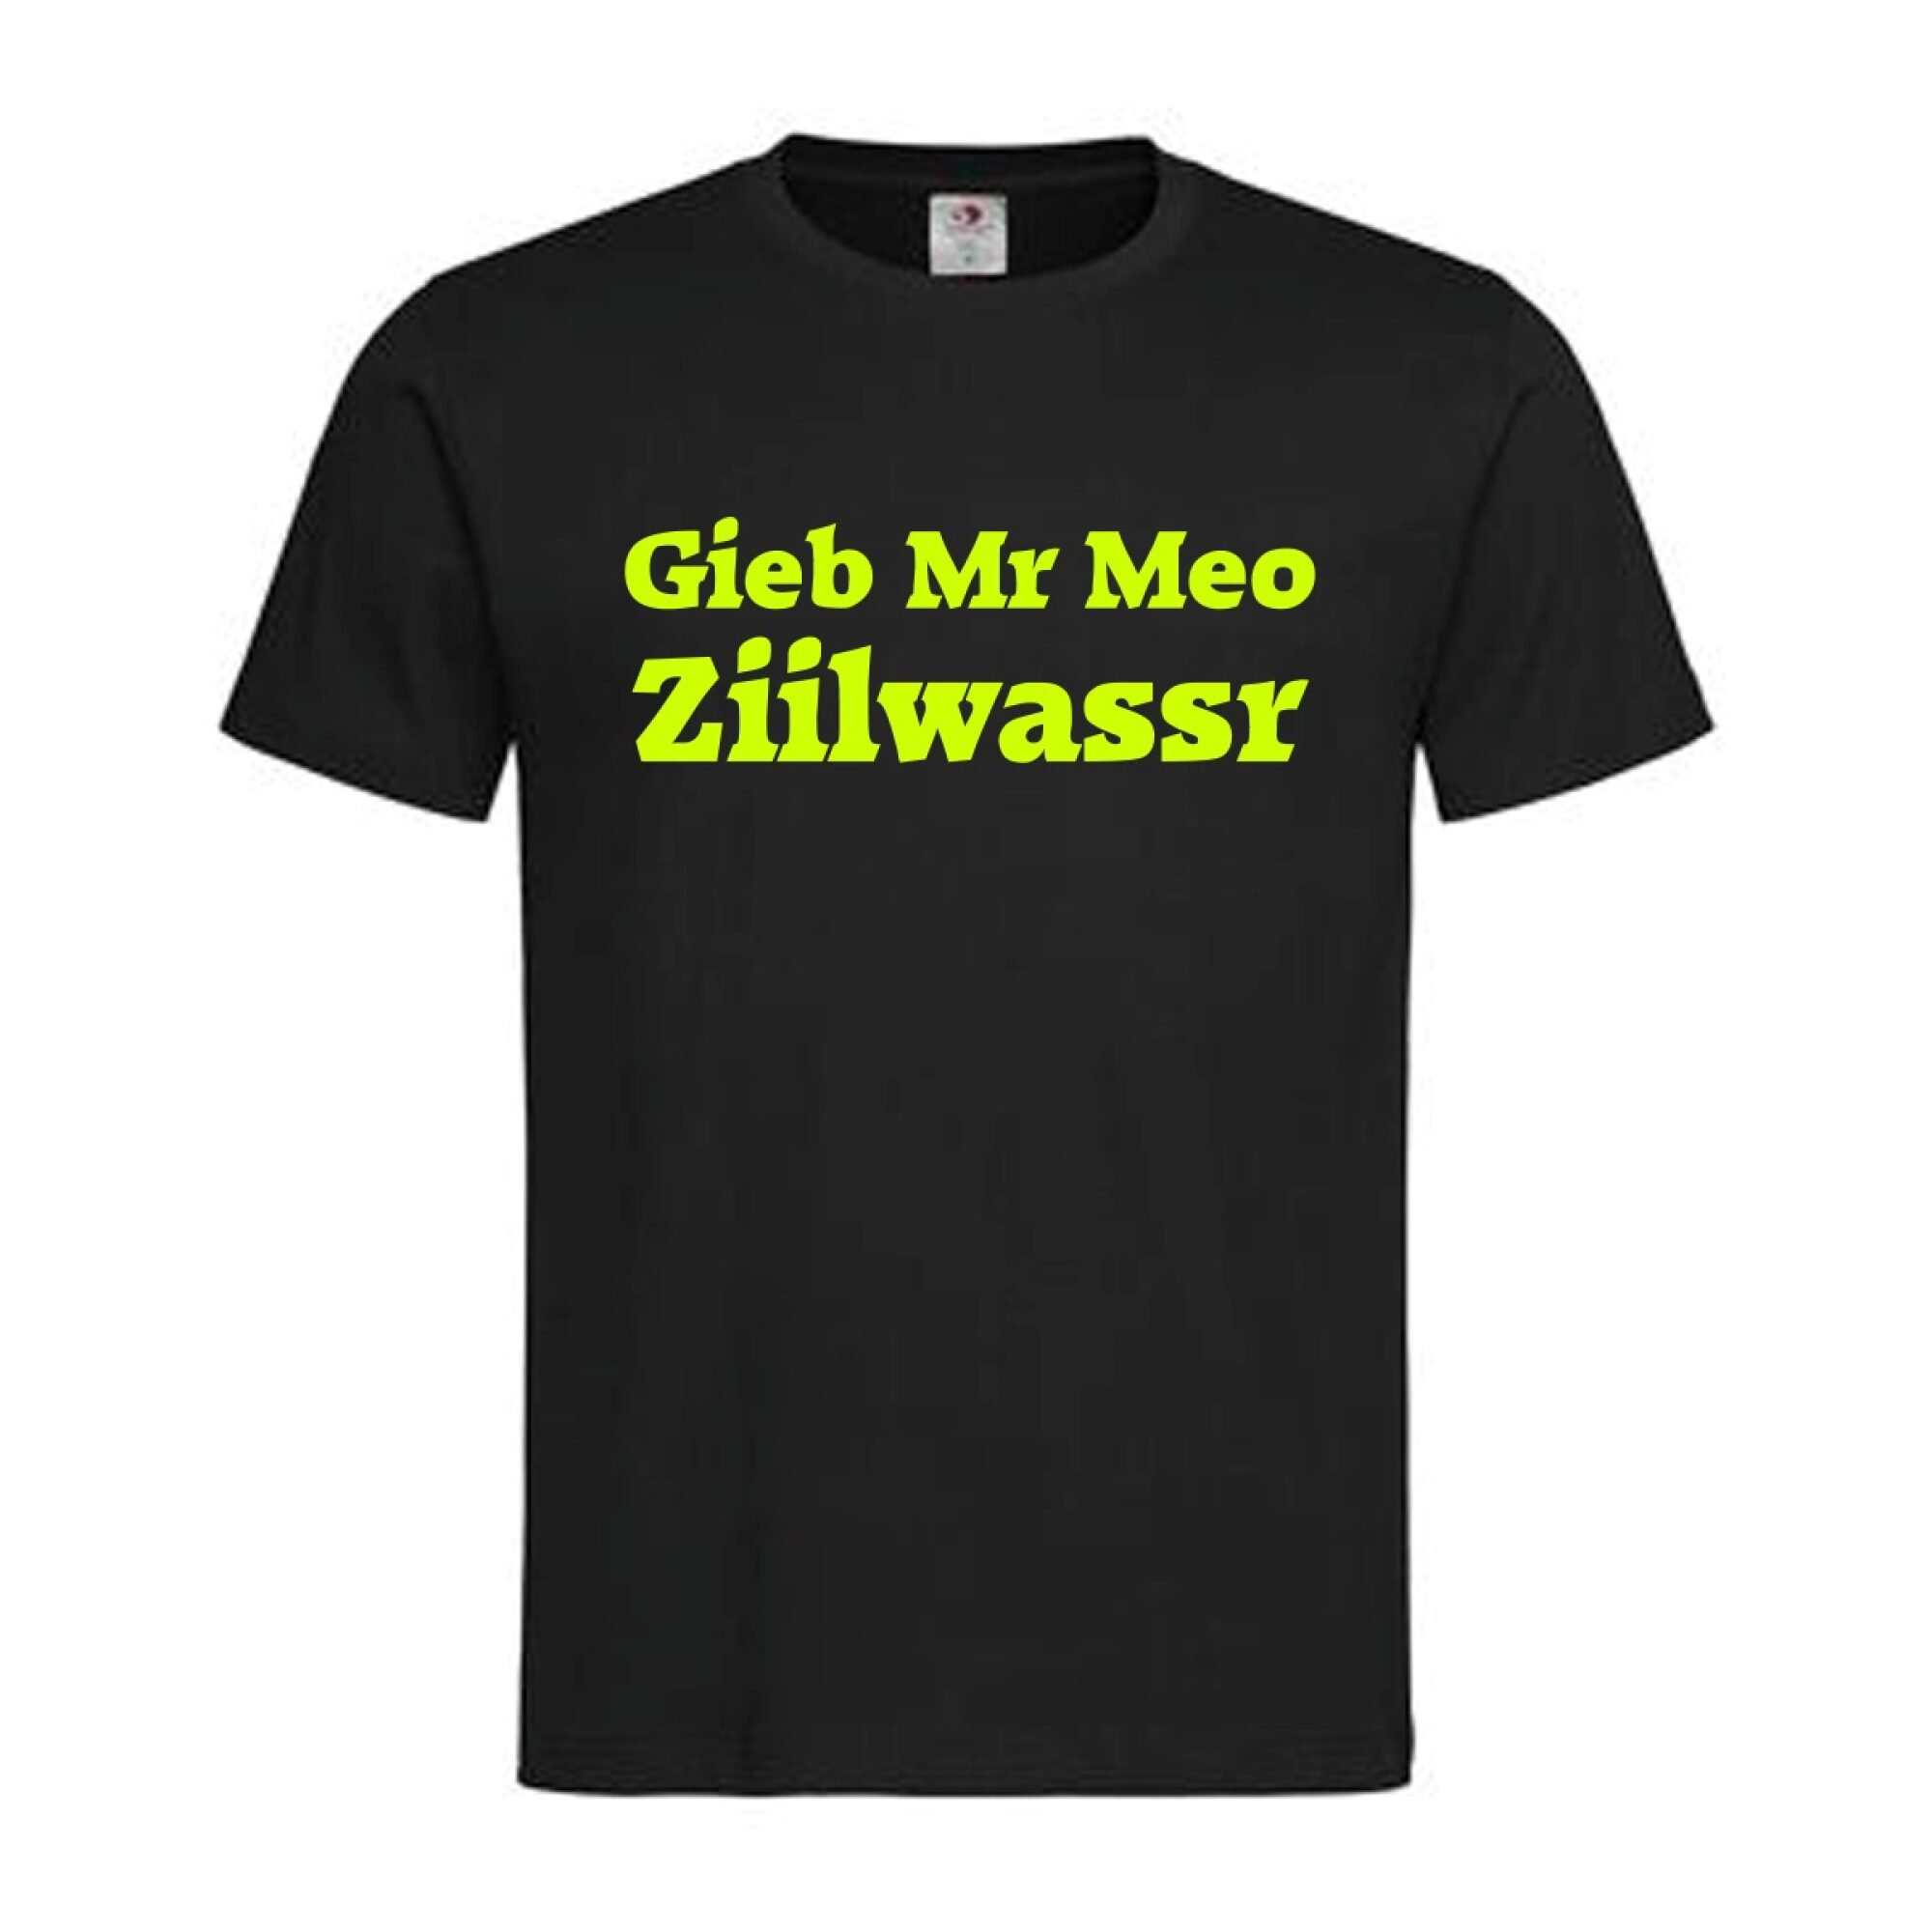 T-Shirt Vorarlberg Meo Ziilwassr – Österreichische Sprüche